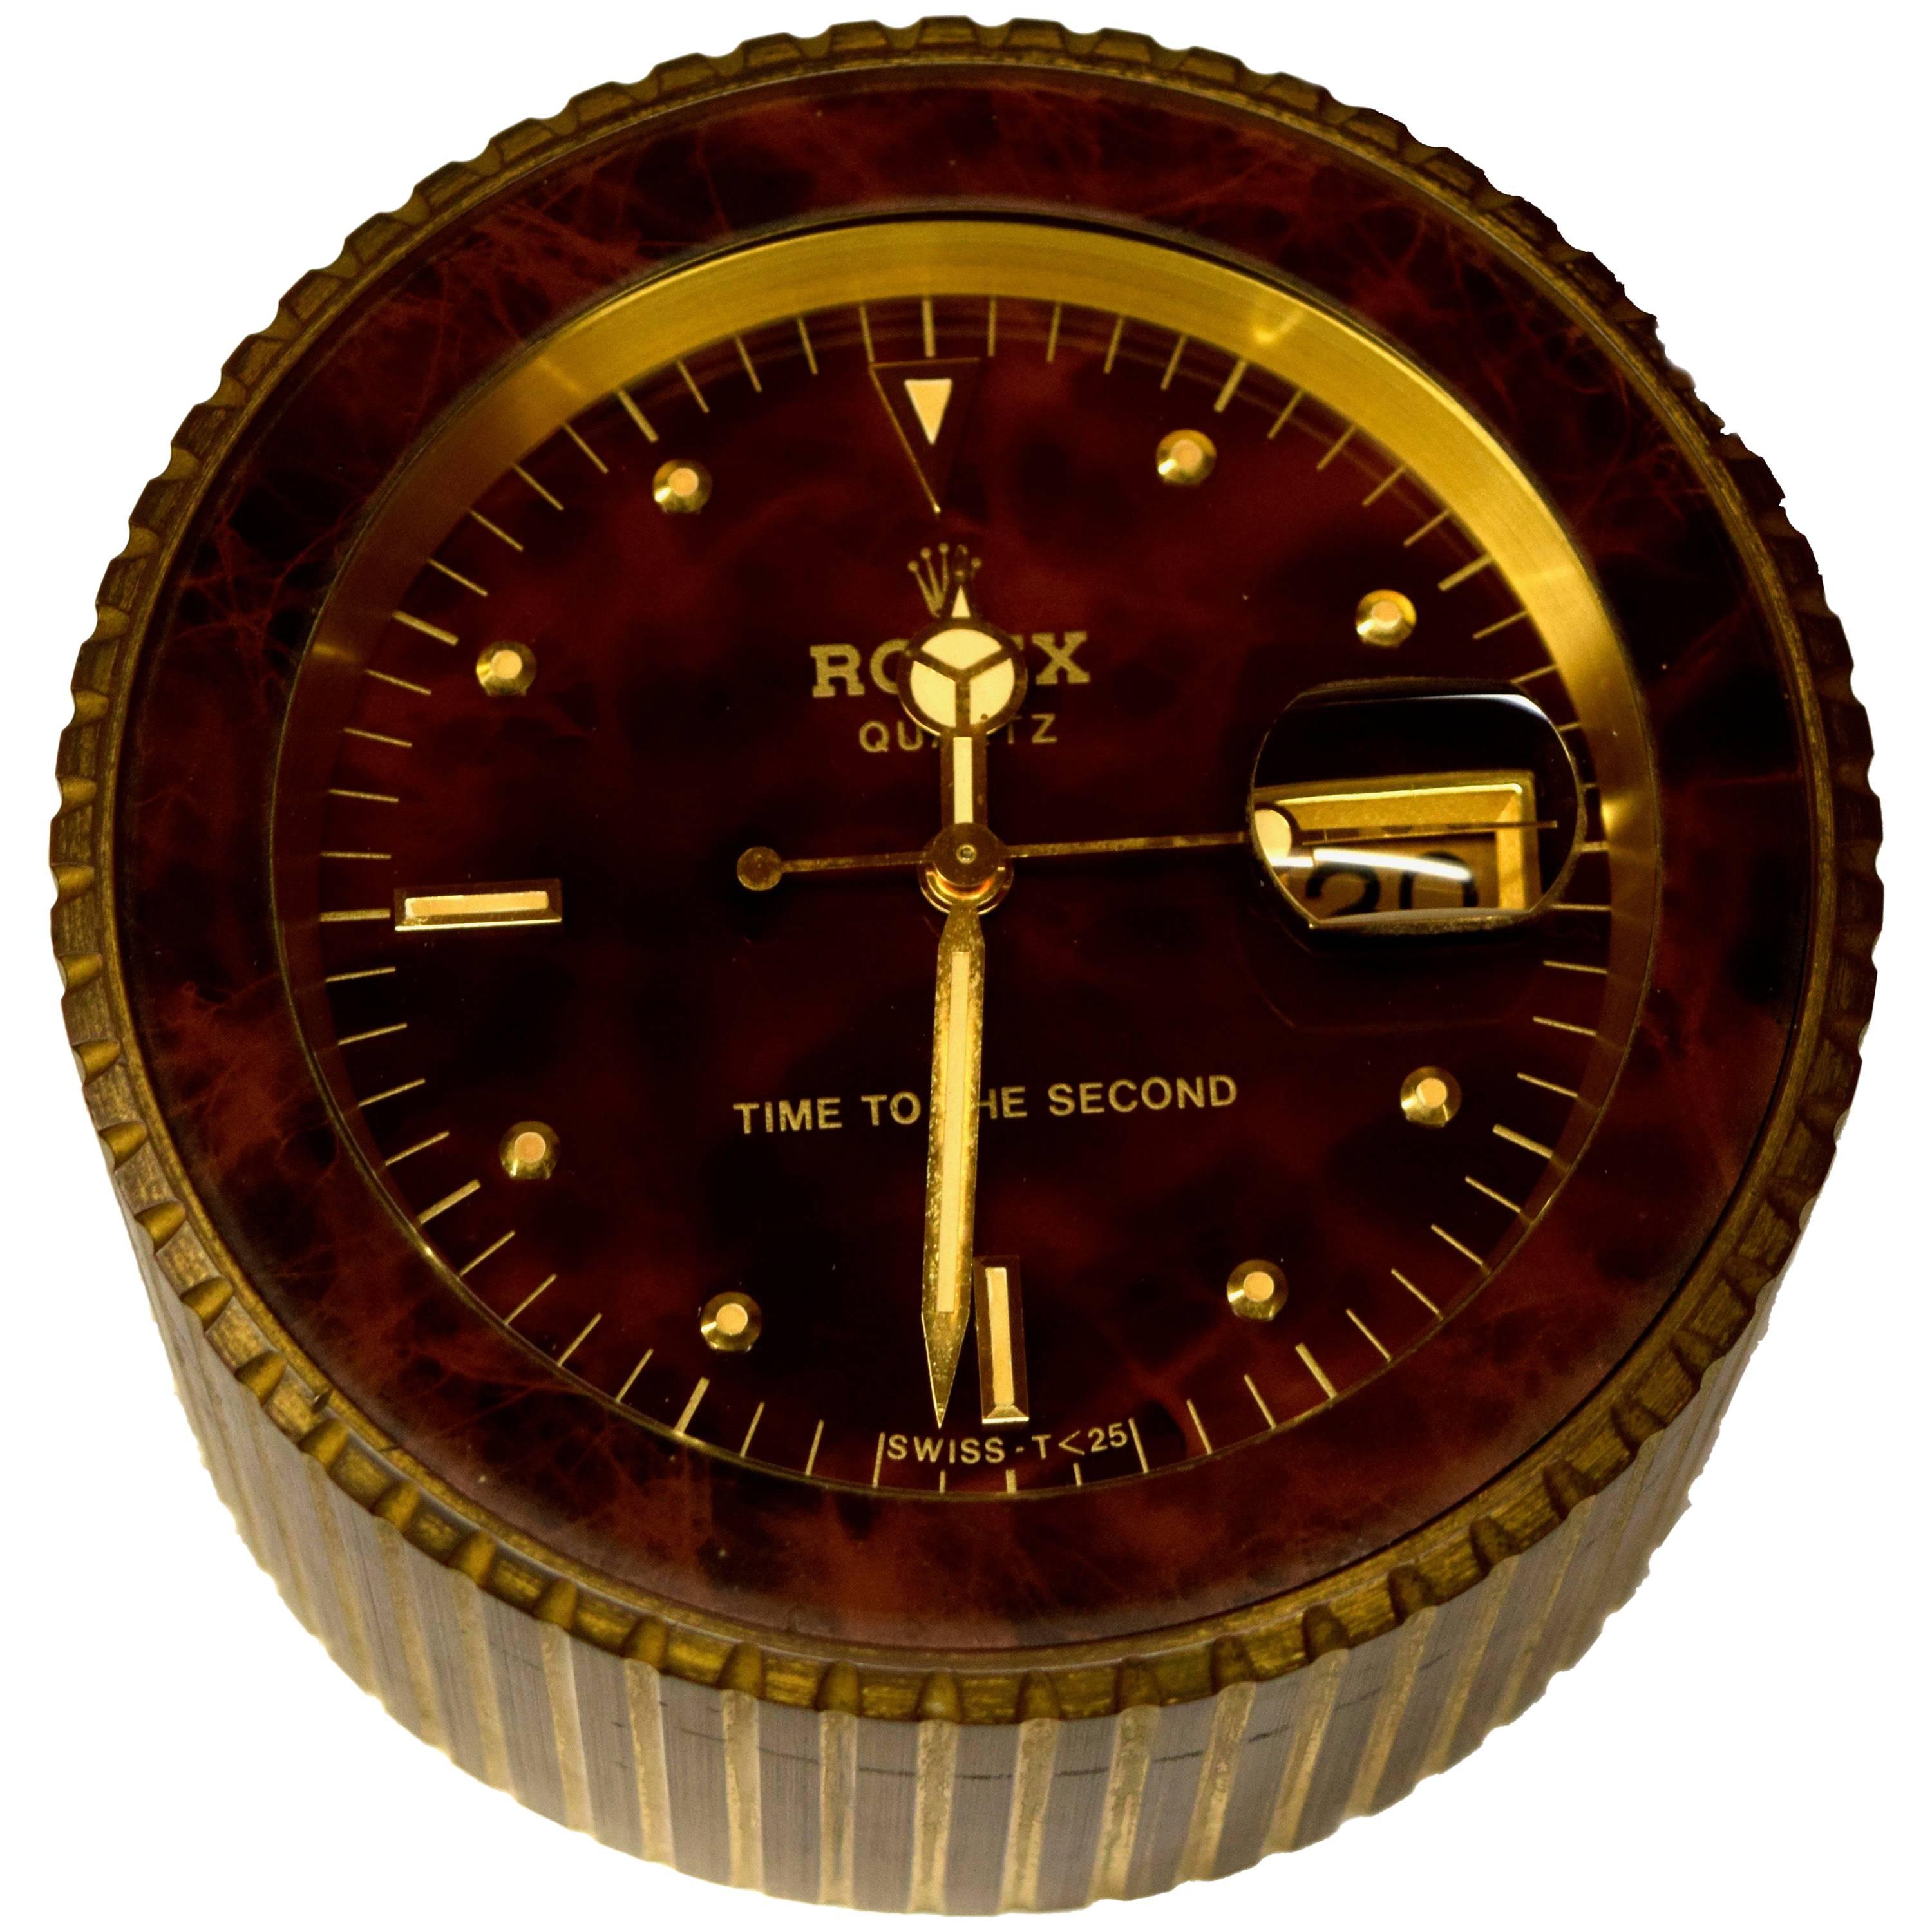 Rolex "Time To The Second" Quartz Desk Clock Ref 455 No 1227, Circa 1985 For Sale